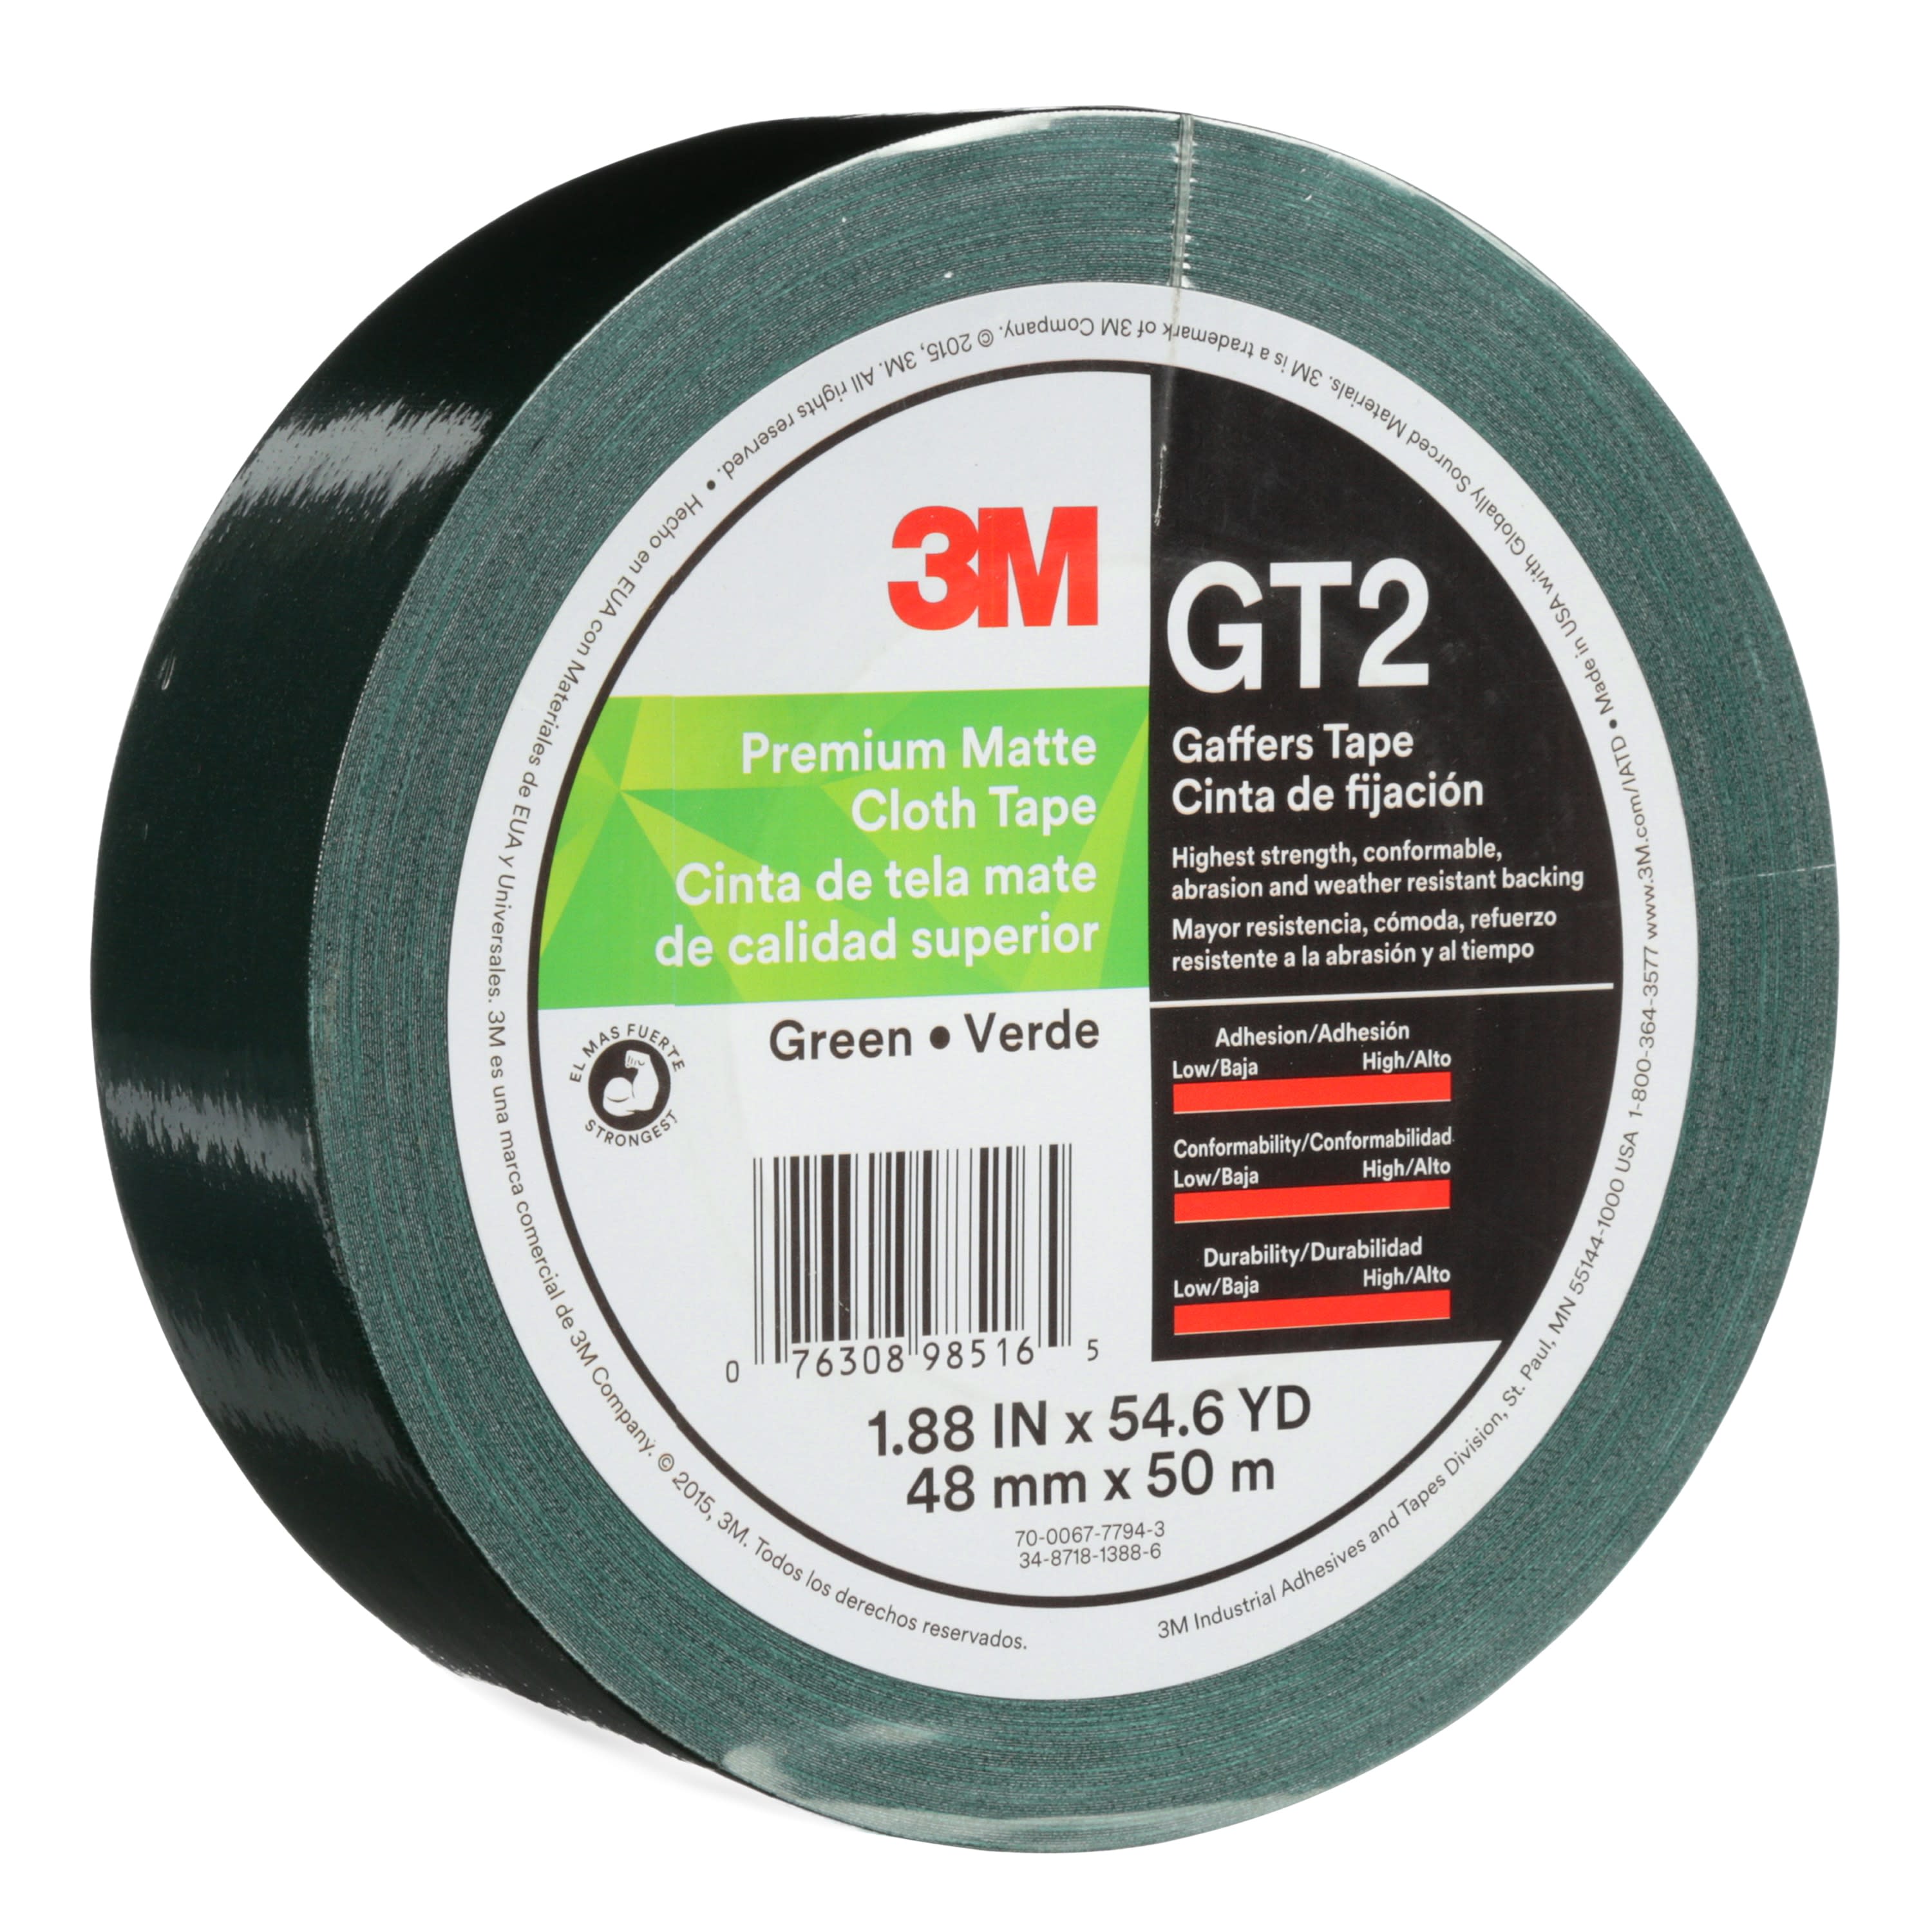 3M™ Premium Matte Cloth (Gaffers) Tape GT2, Green, 48 mm x 50 m, 11 mil,
24 per case